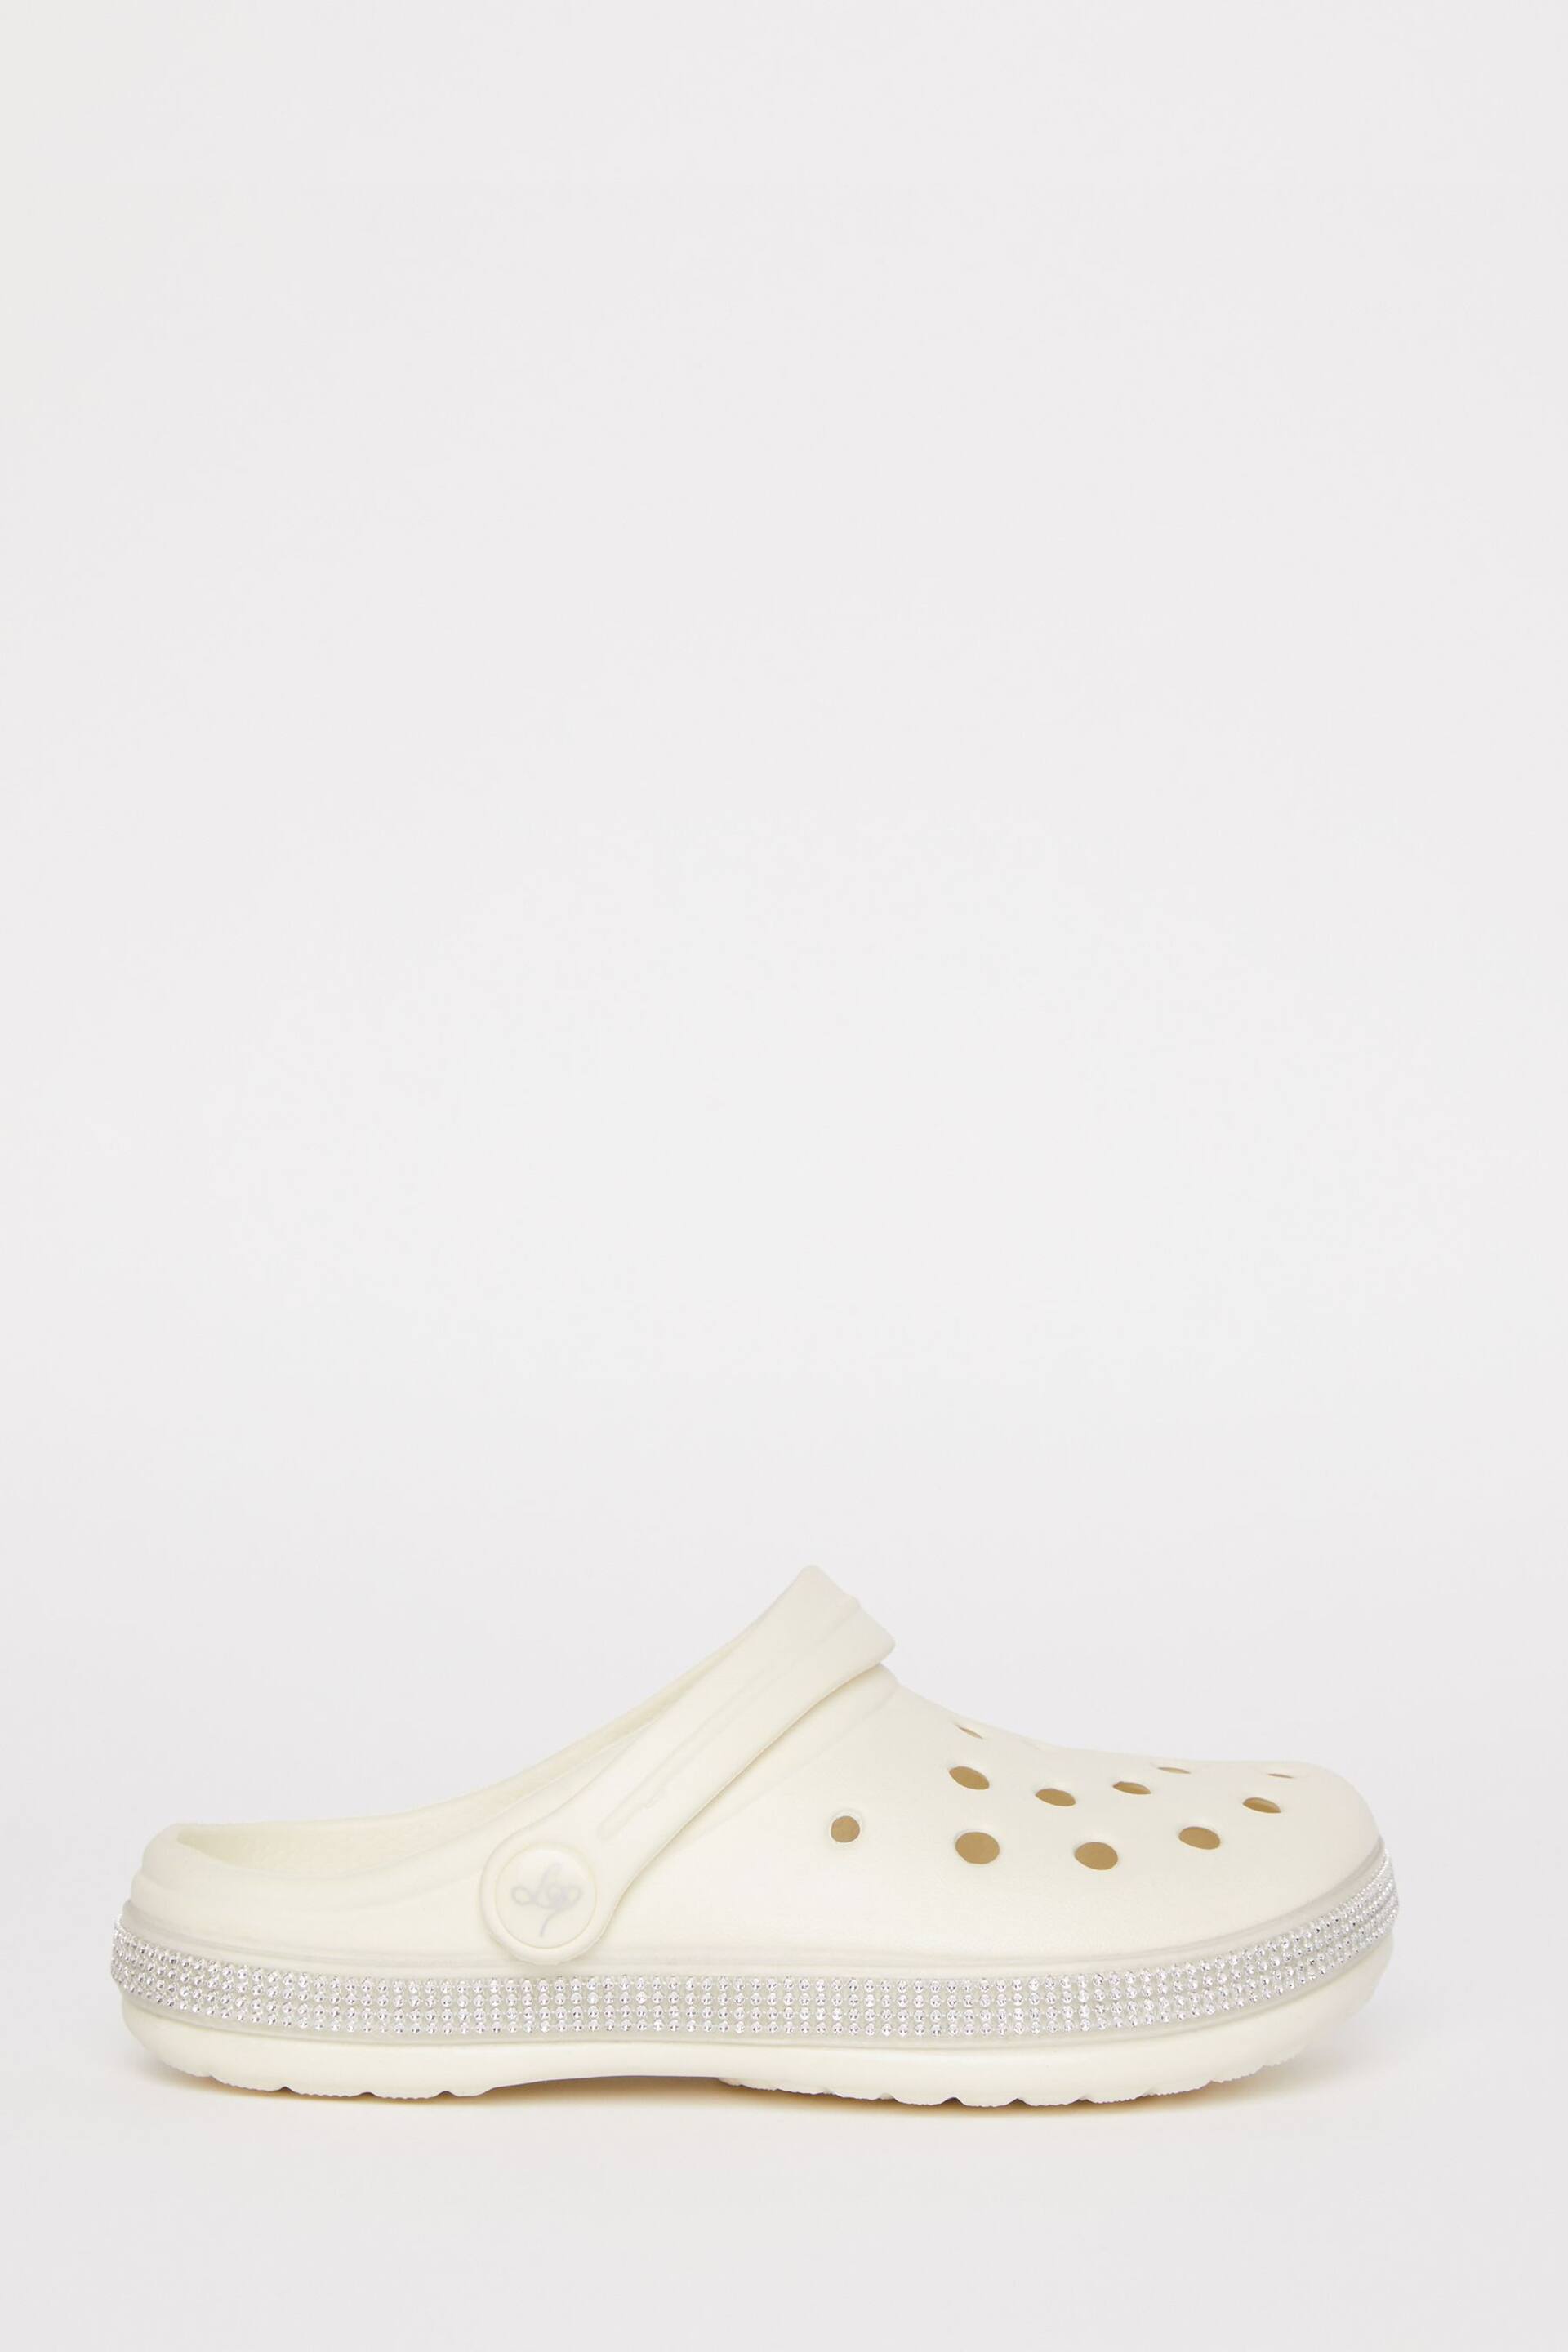 Lipsy White Slip On Glitter Clog Sandals - Image 2 of 4